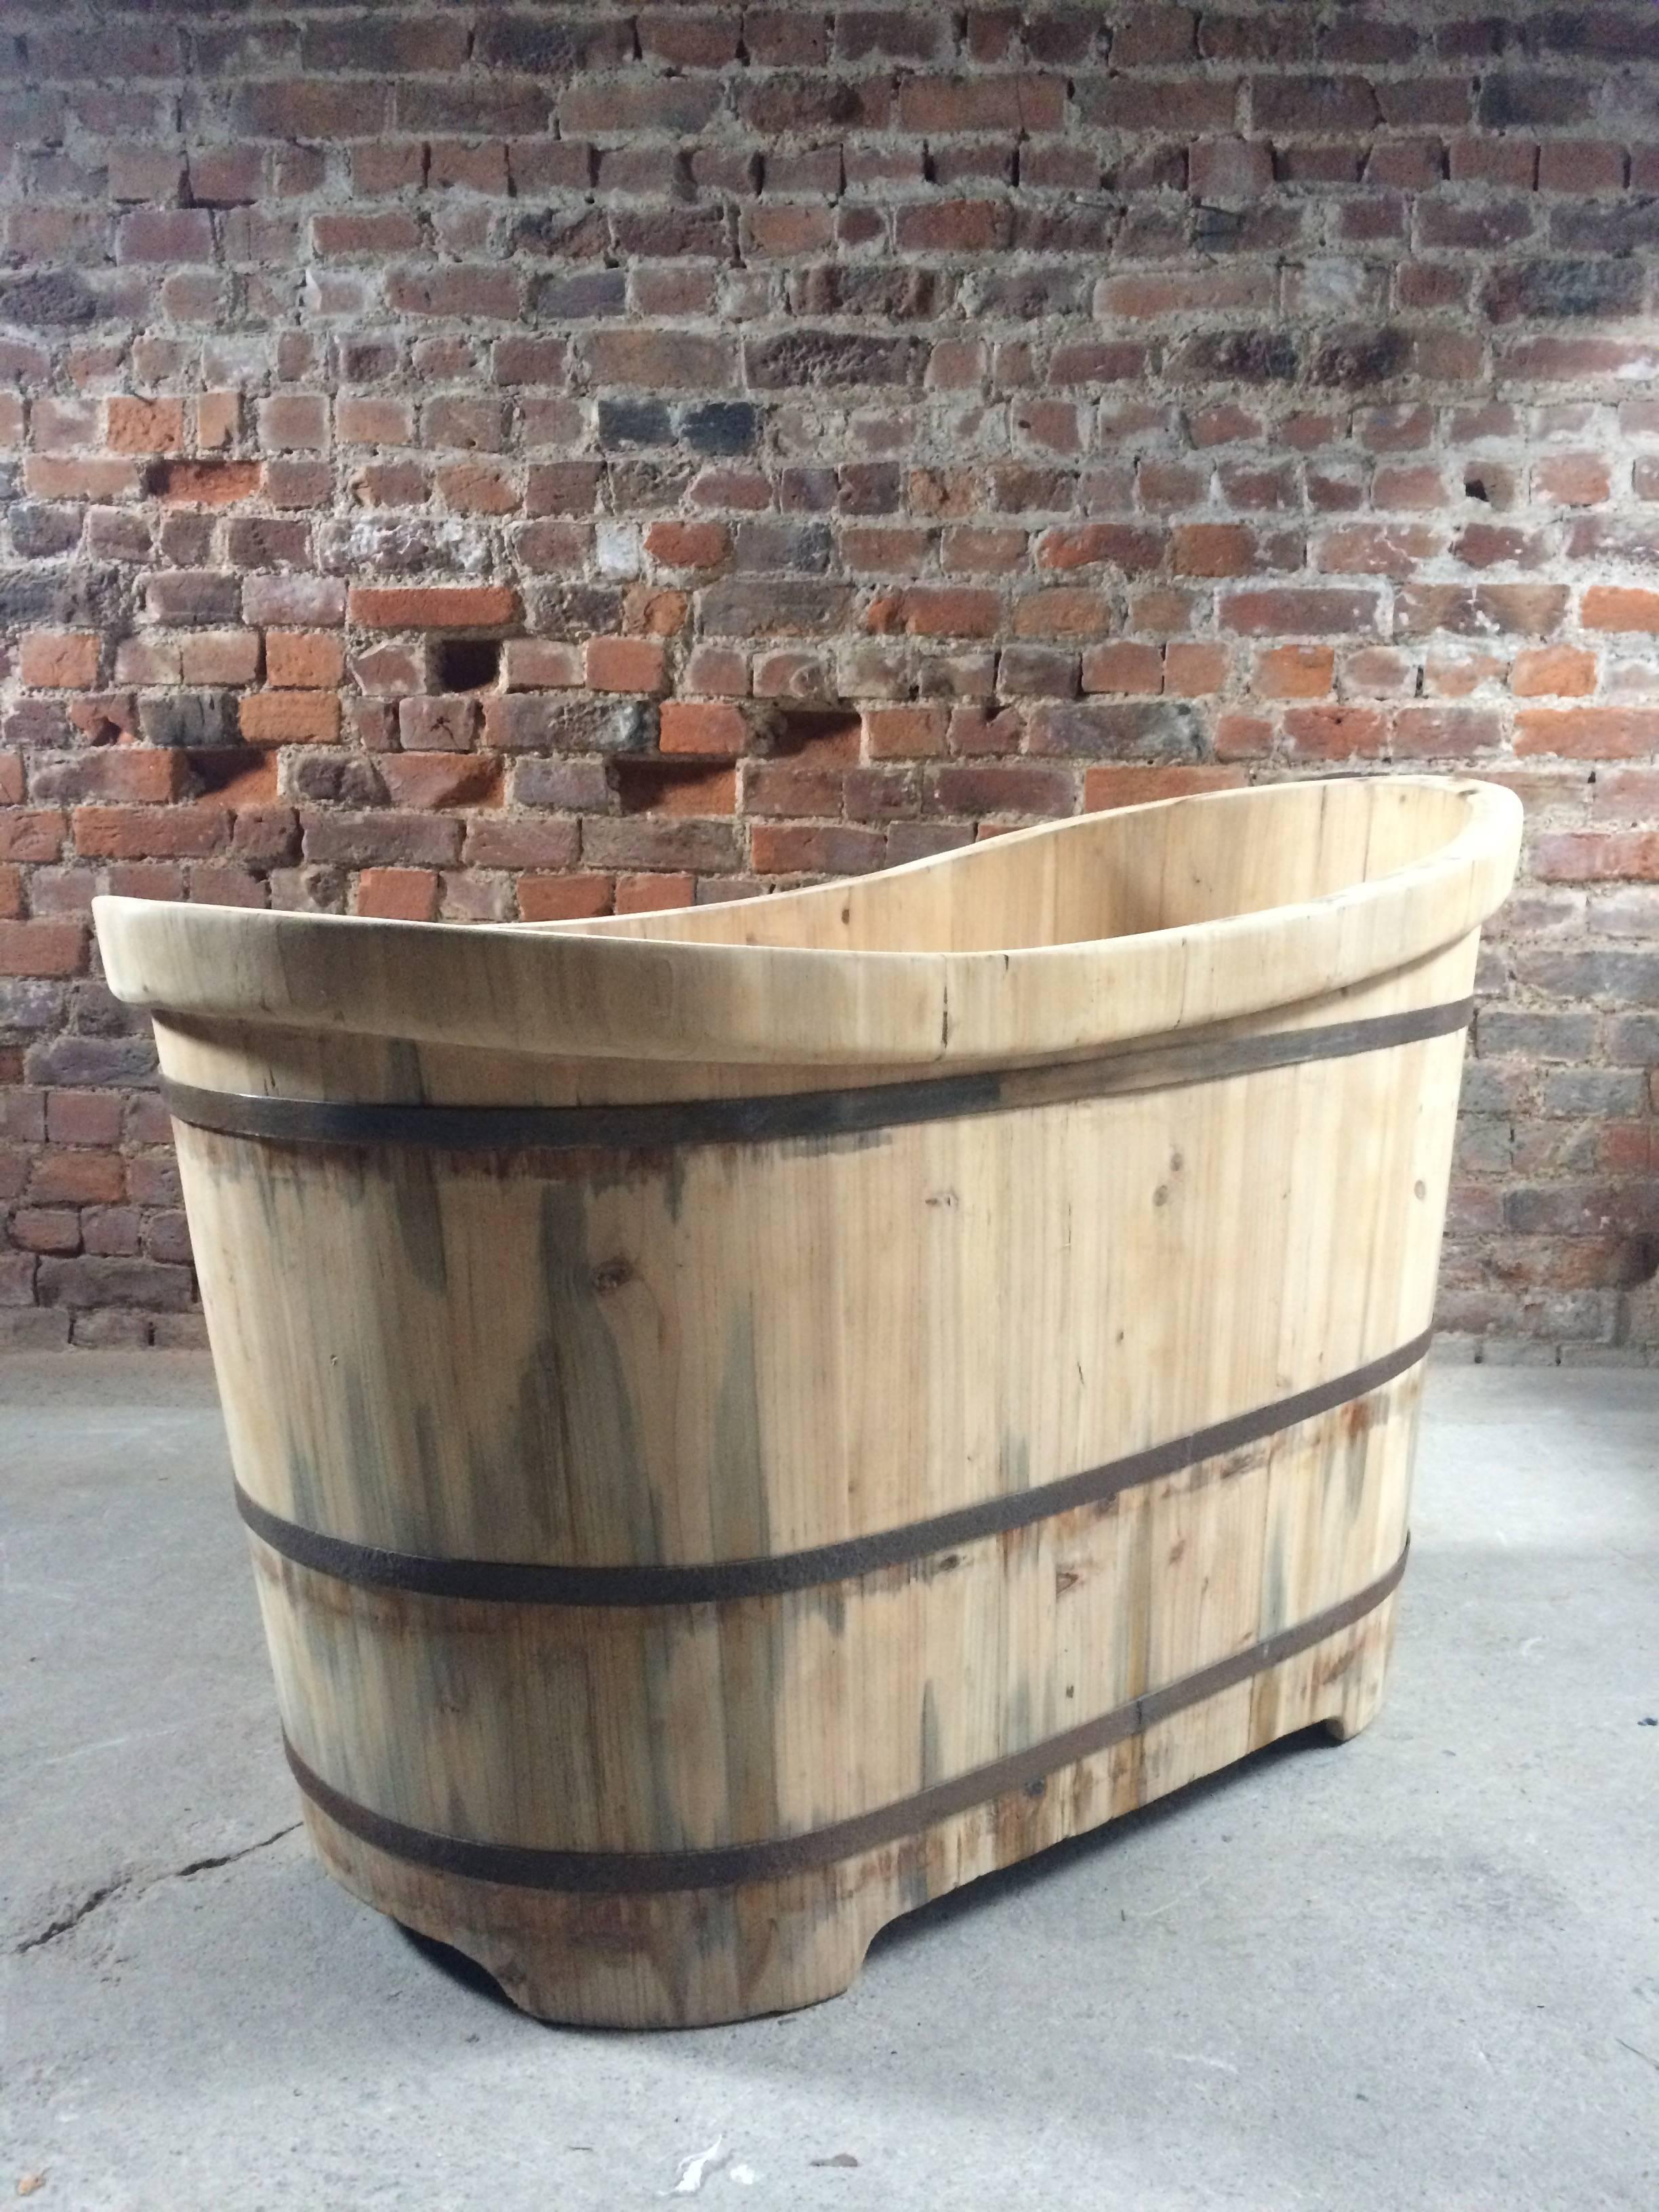 20th Century Wooden Bath Tub Freestanding Slipper Bath Cedar Wood Rustic